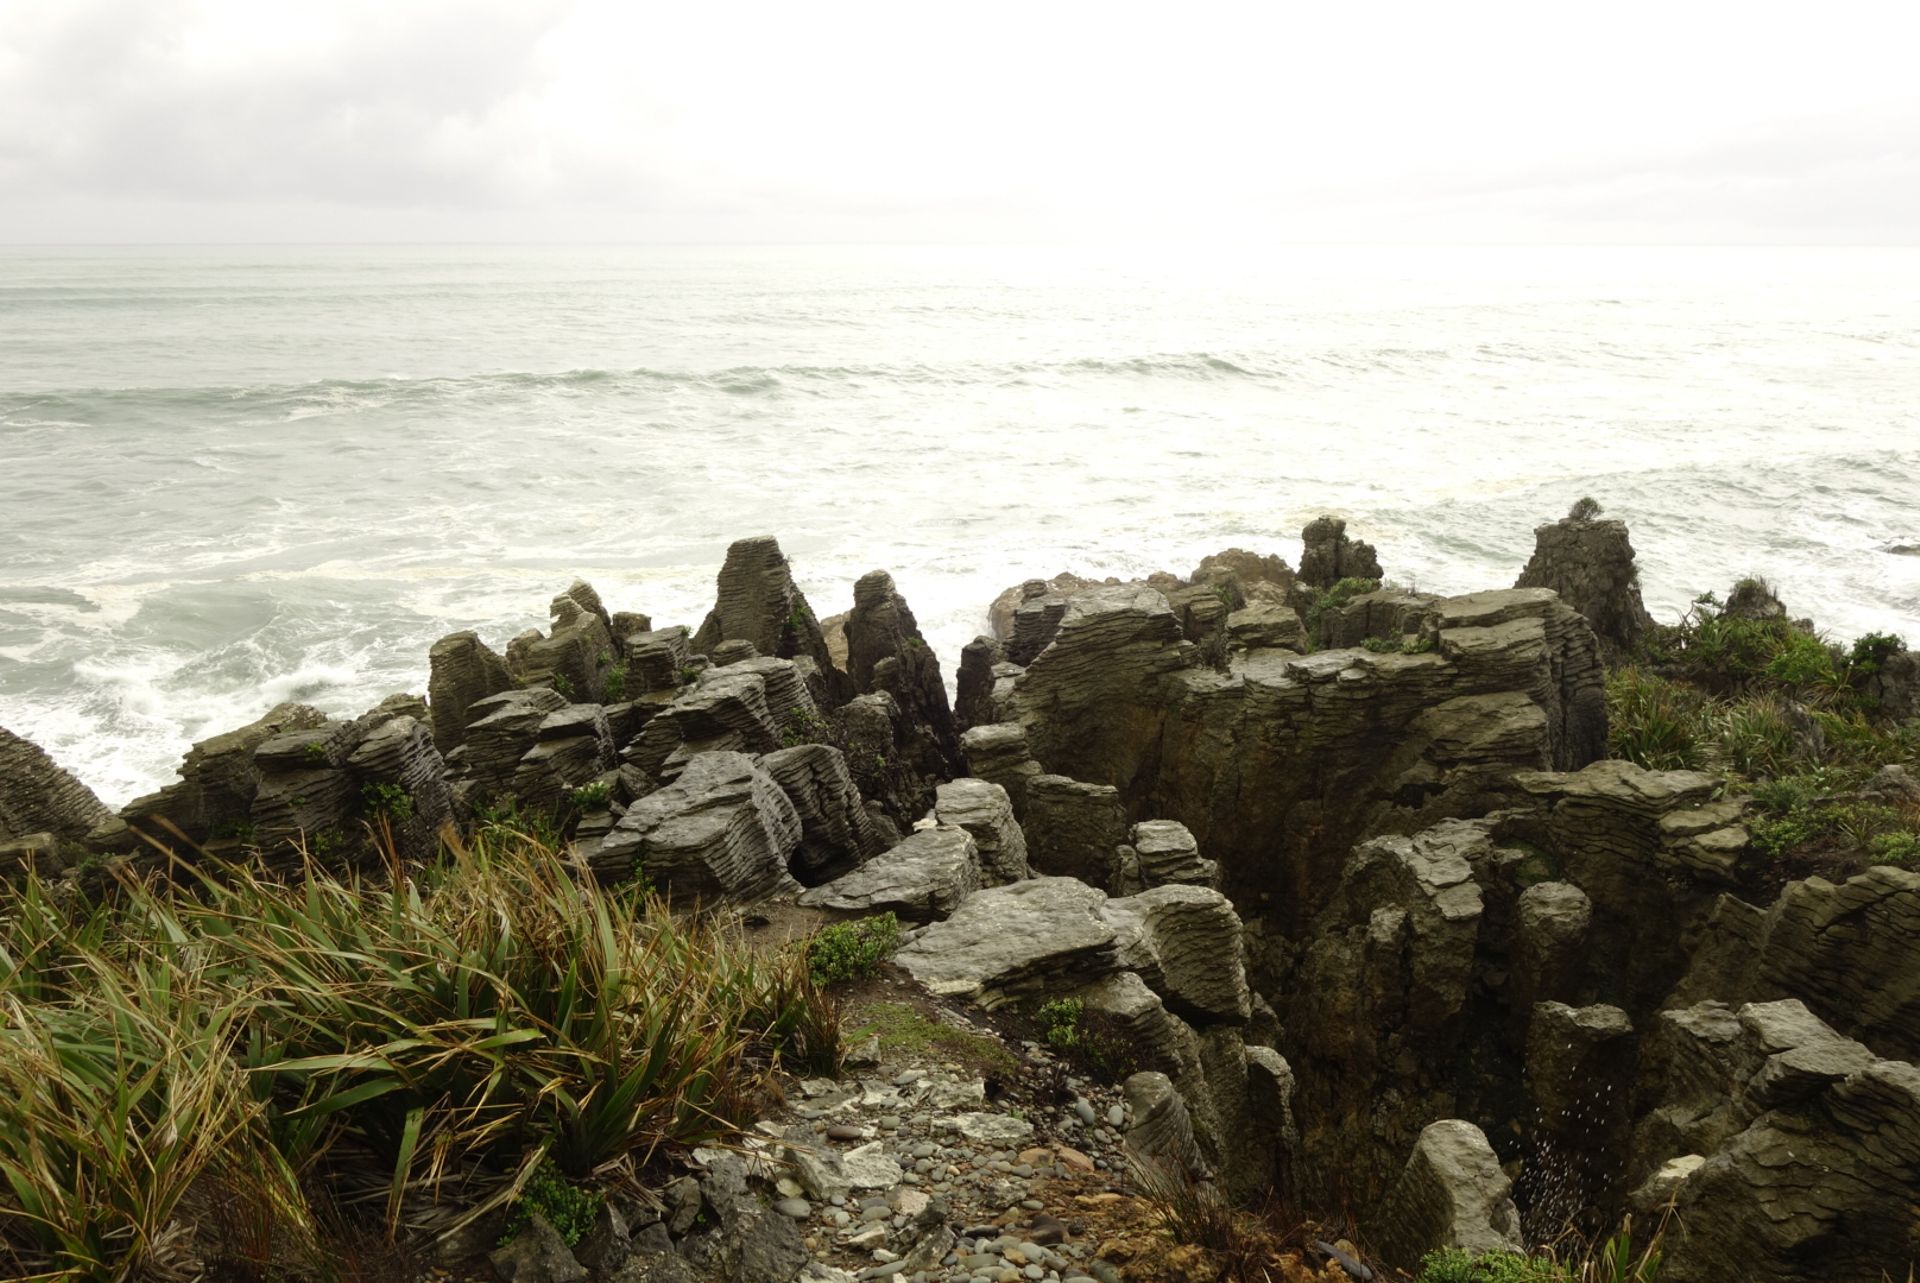 Foreground pancake rocks, behind the sea